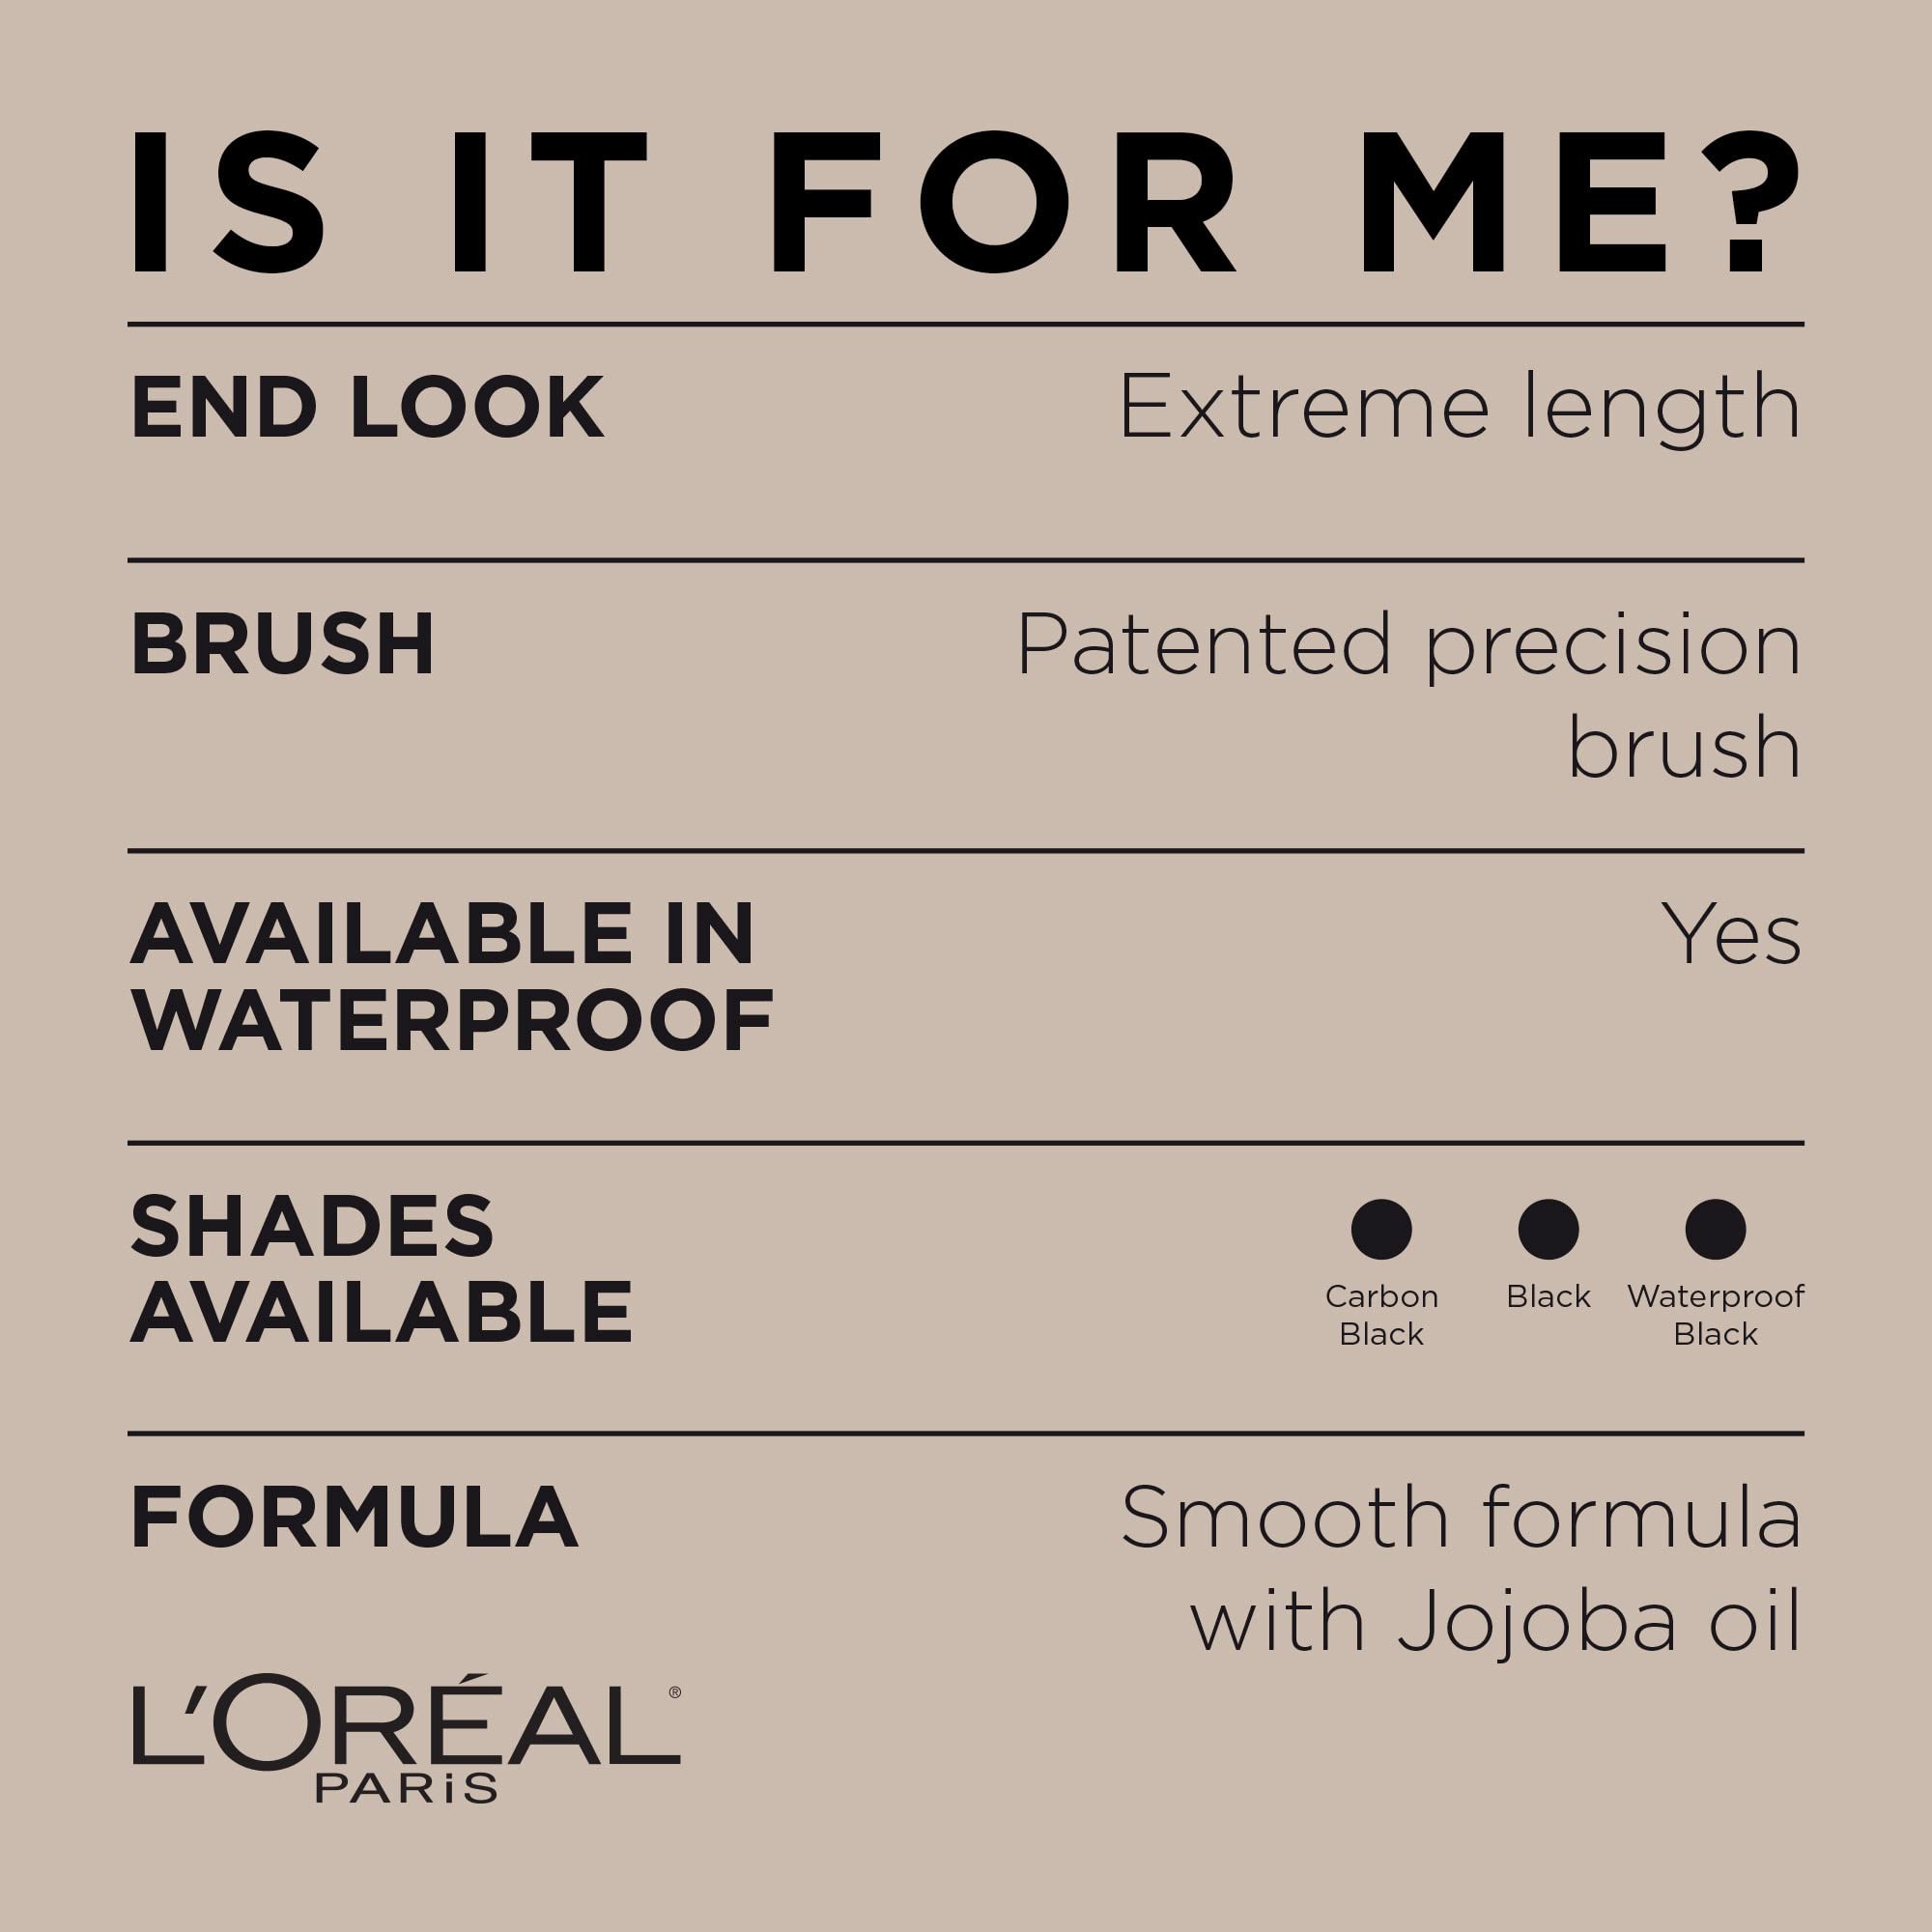 L’Oréal Paris Makeup Telescopic Original Lengthening Mascara, Blackest Black, 0.27 Fl Oz (1 Count)